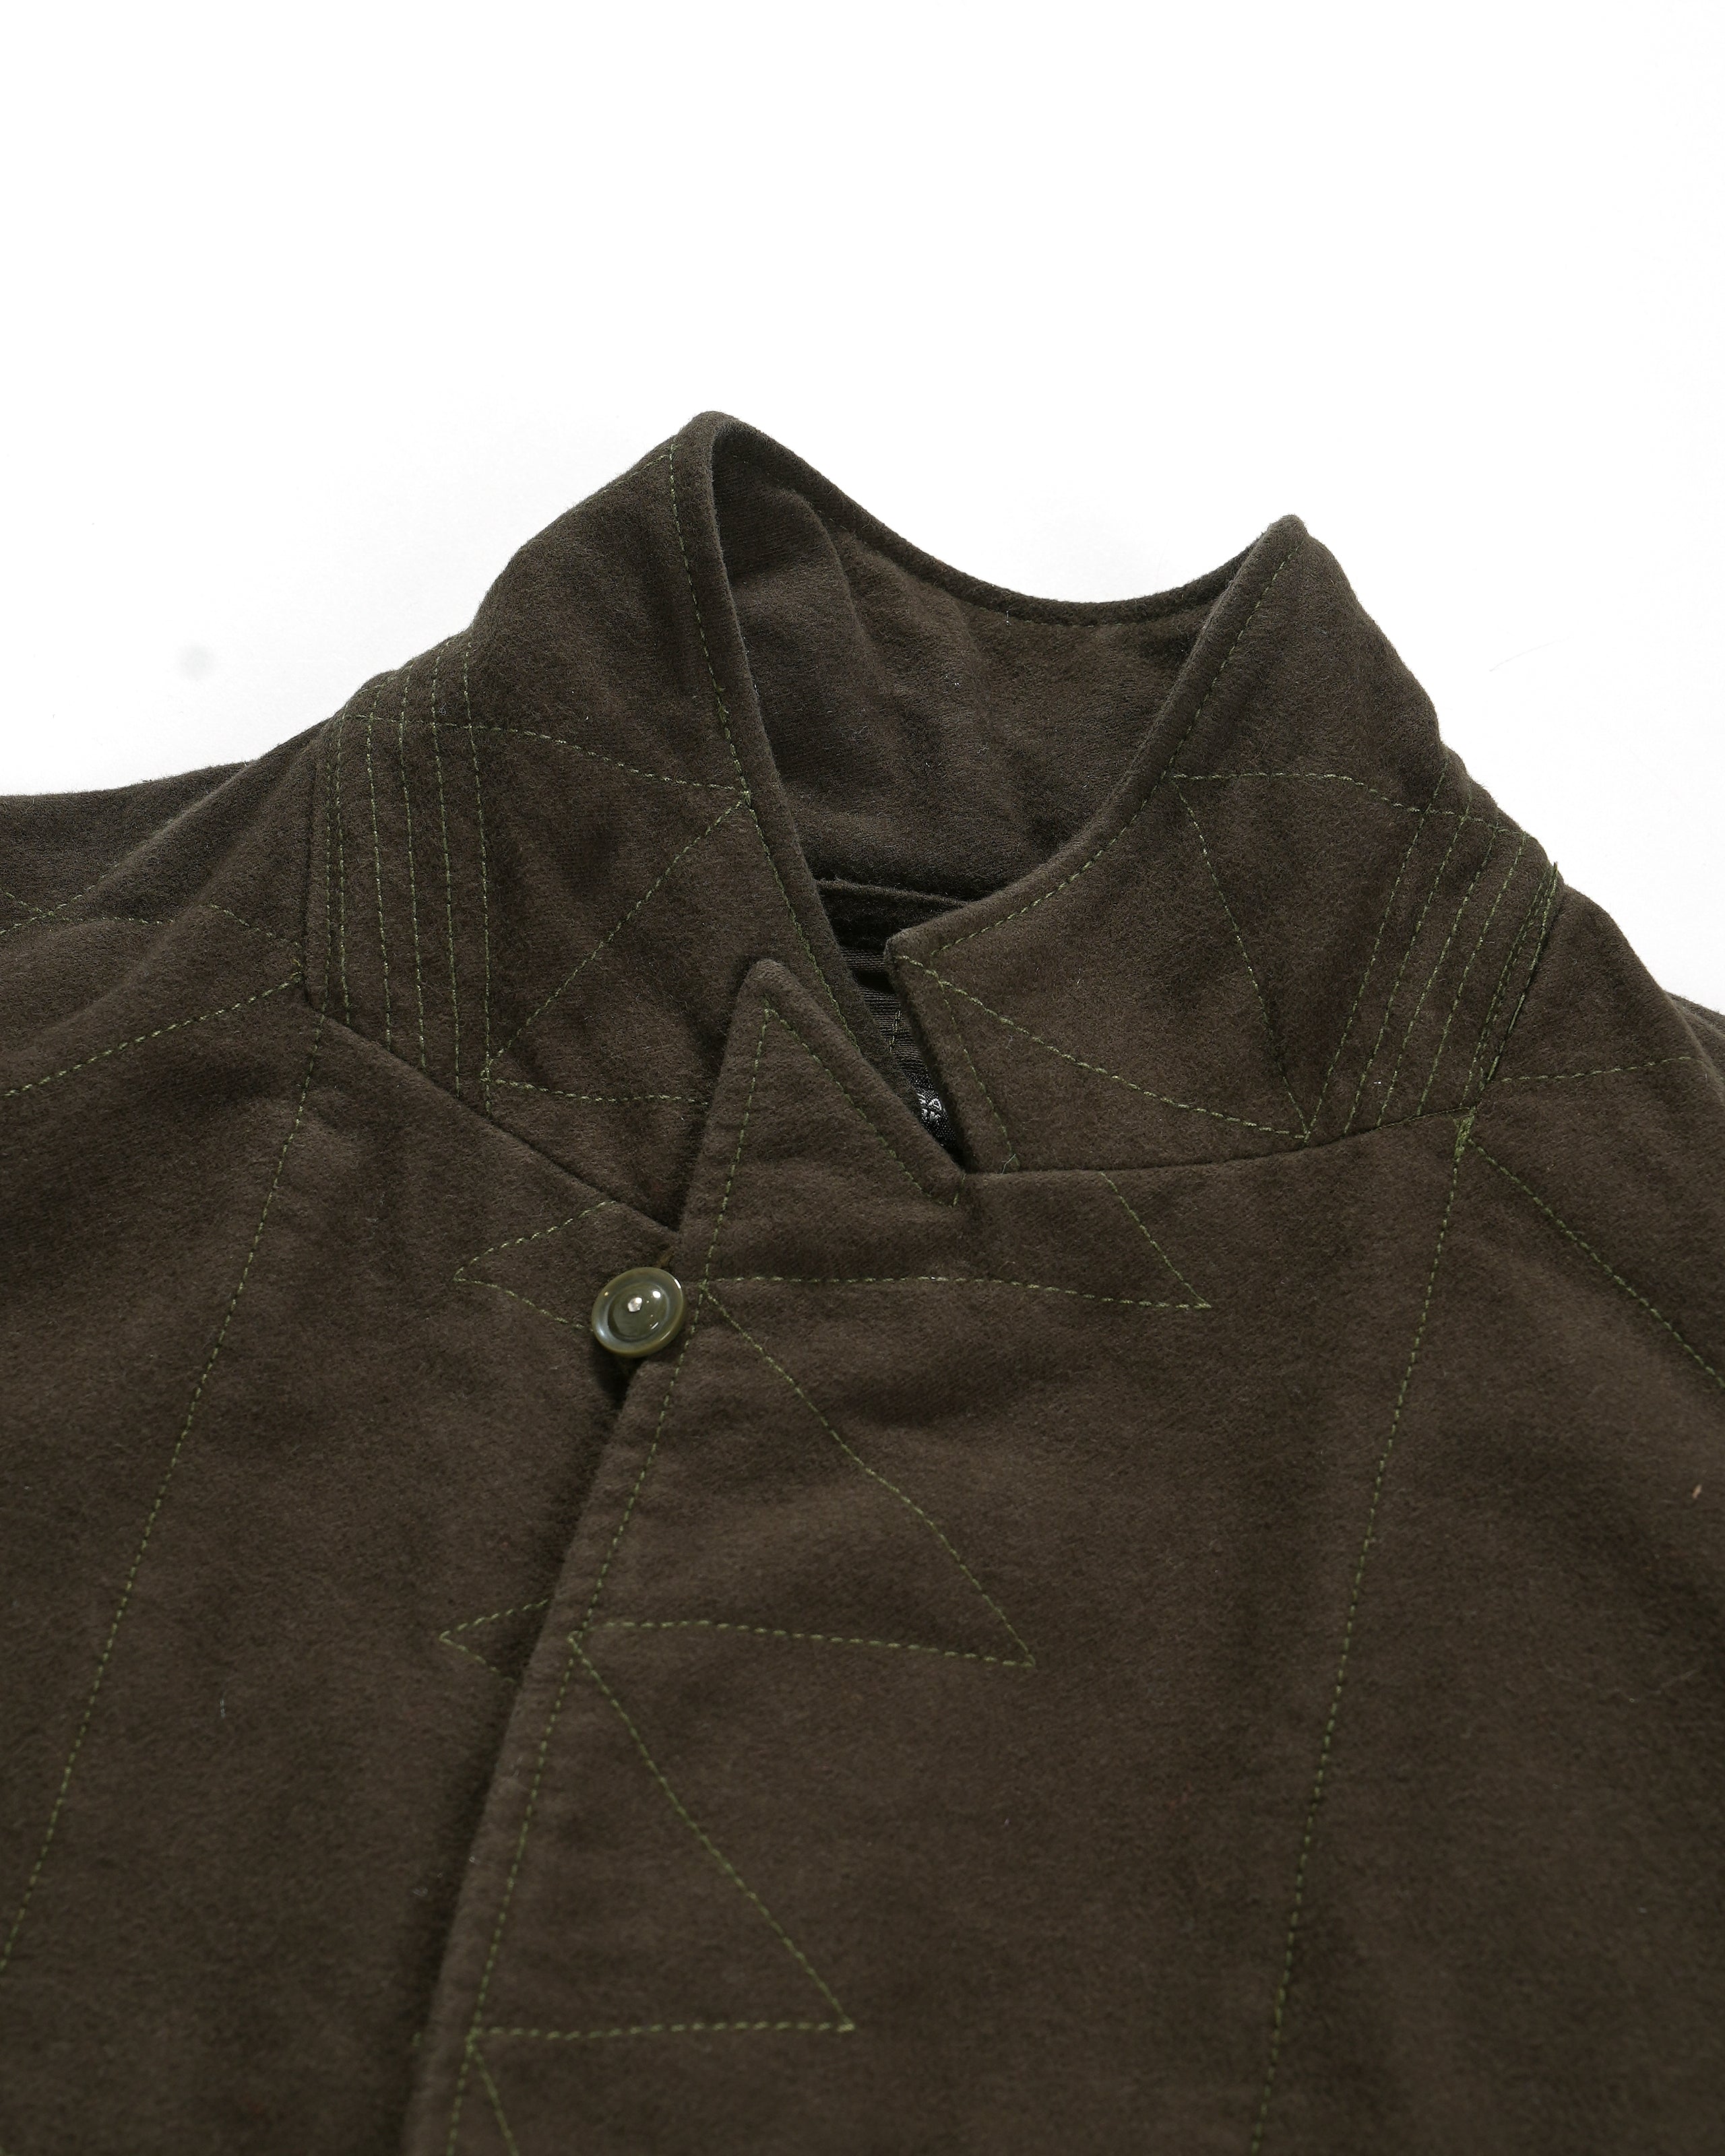 Bedford Jacket - Olive Cotton Moleskin